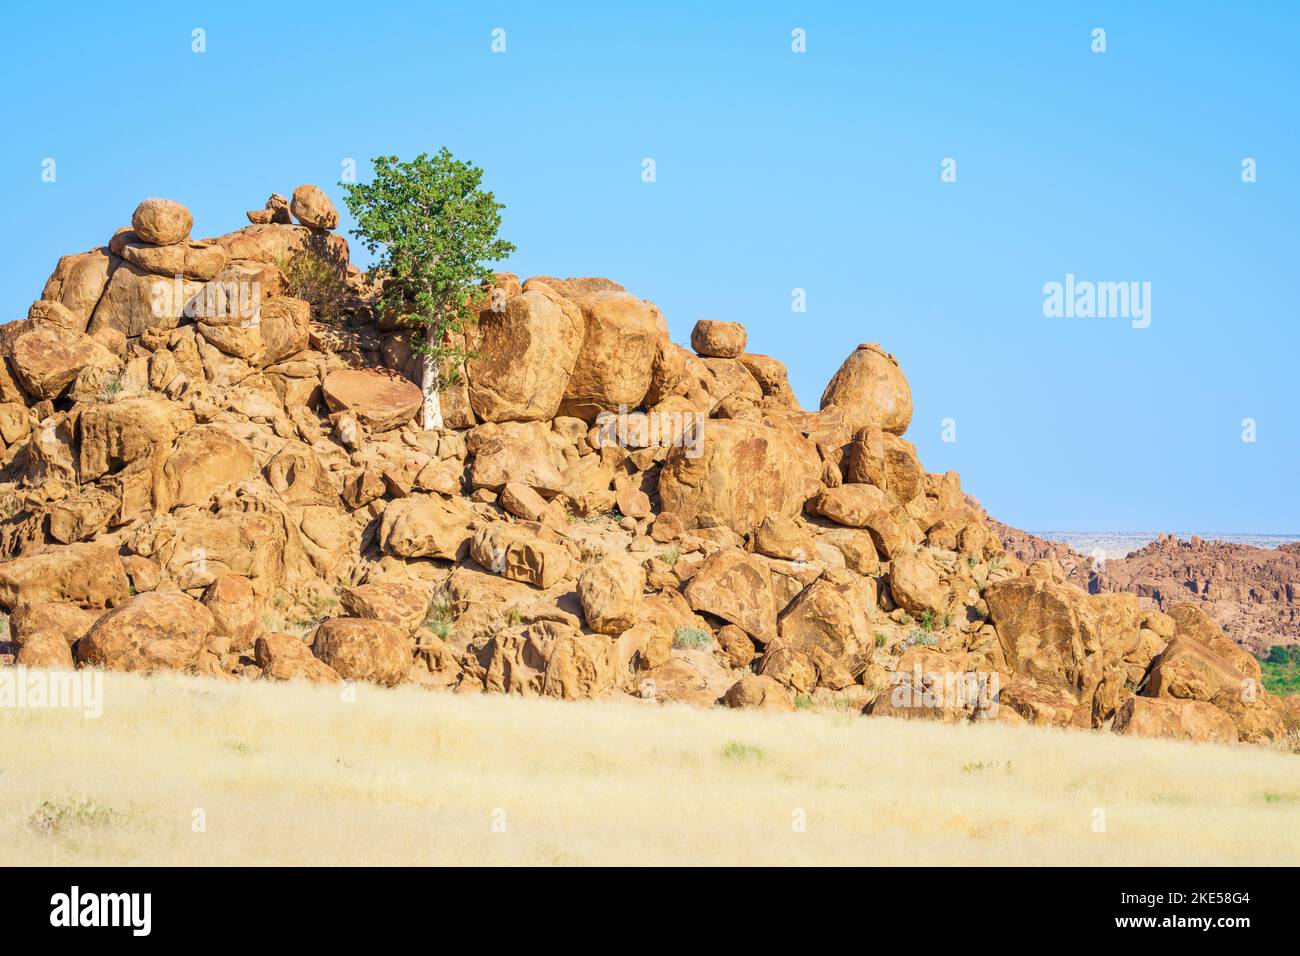 L'albero del pastore verde cresce tra rocce arancioni e massi. Le rocce brillano splendidamente nel tardo pomeriggio sole. Damaraland, Namibia, Africa Foto Stock